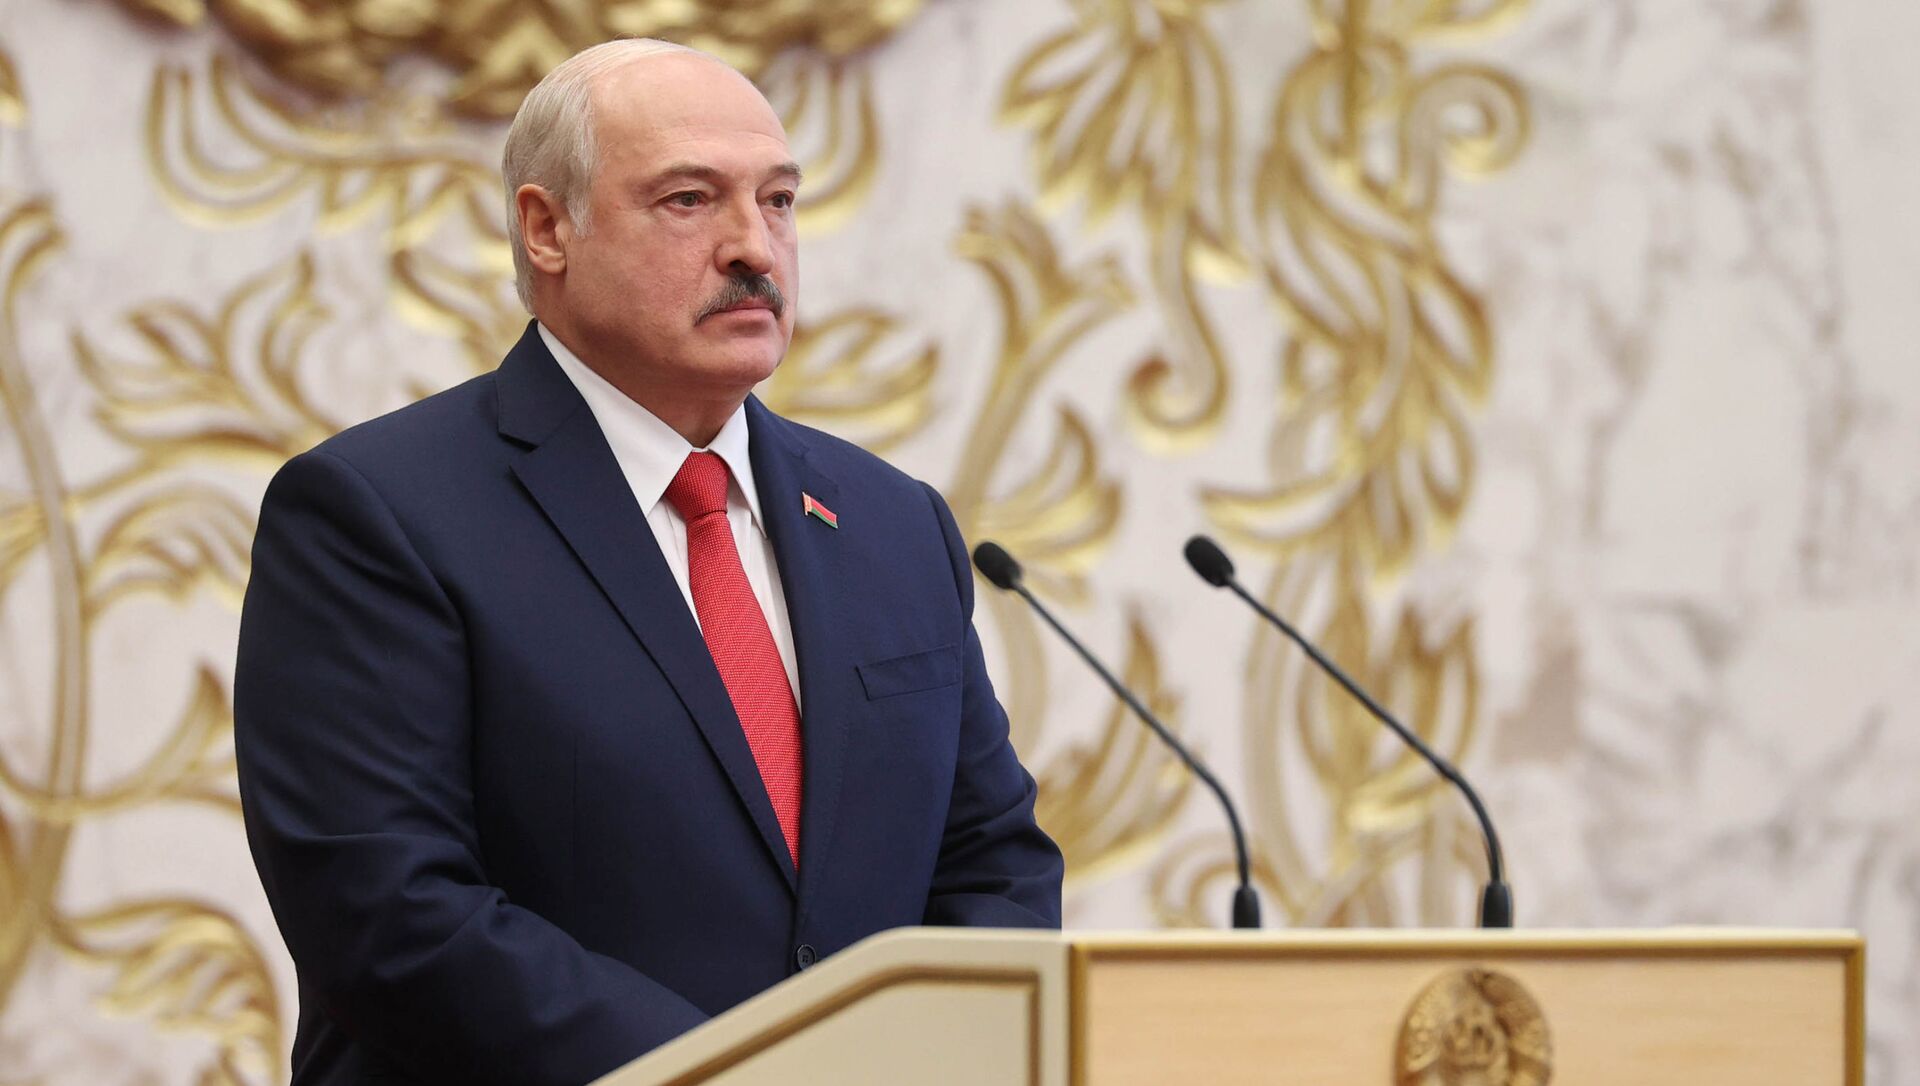 Lukaşenko Ukrayna yı tehdit etti: Bizi kışkırtmayın